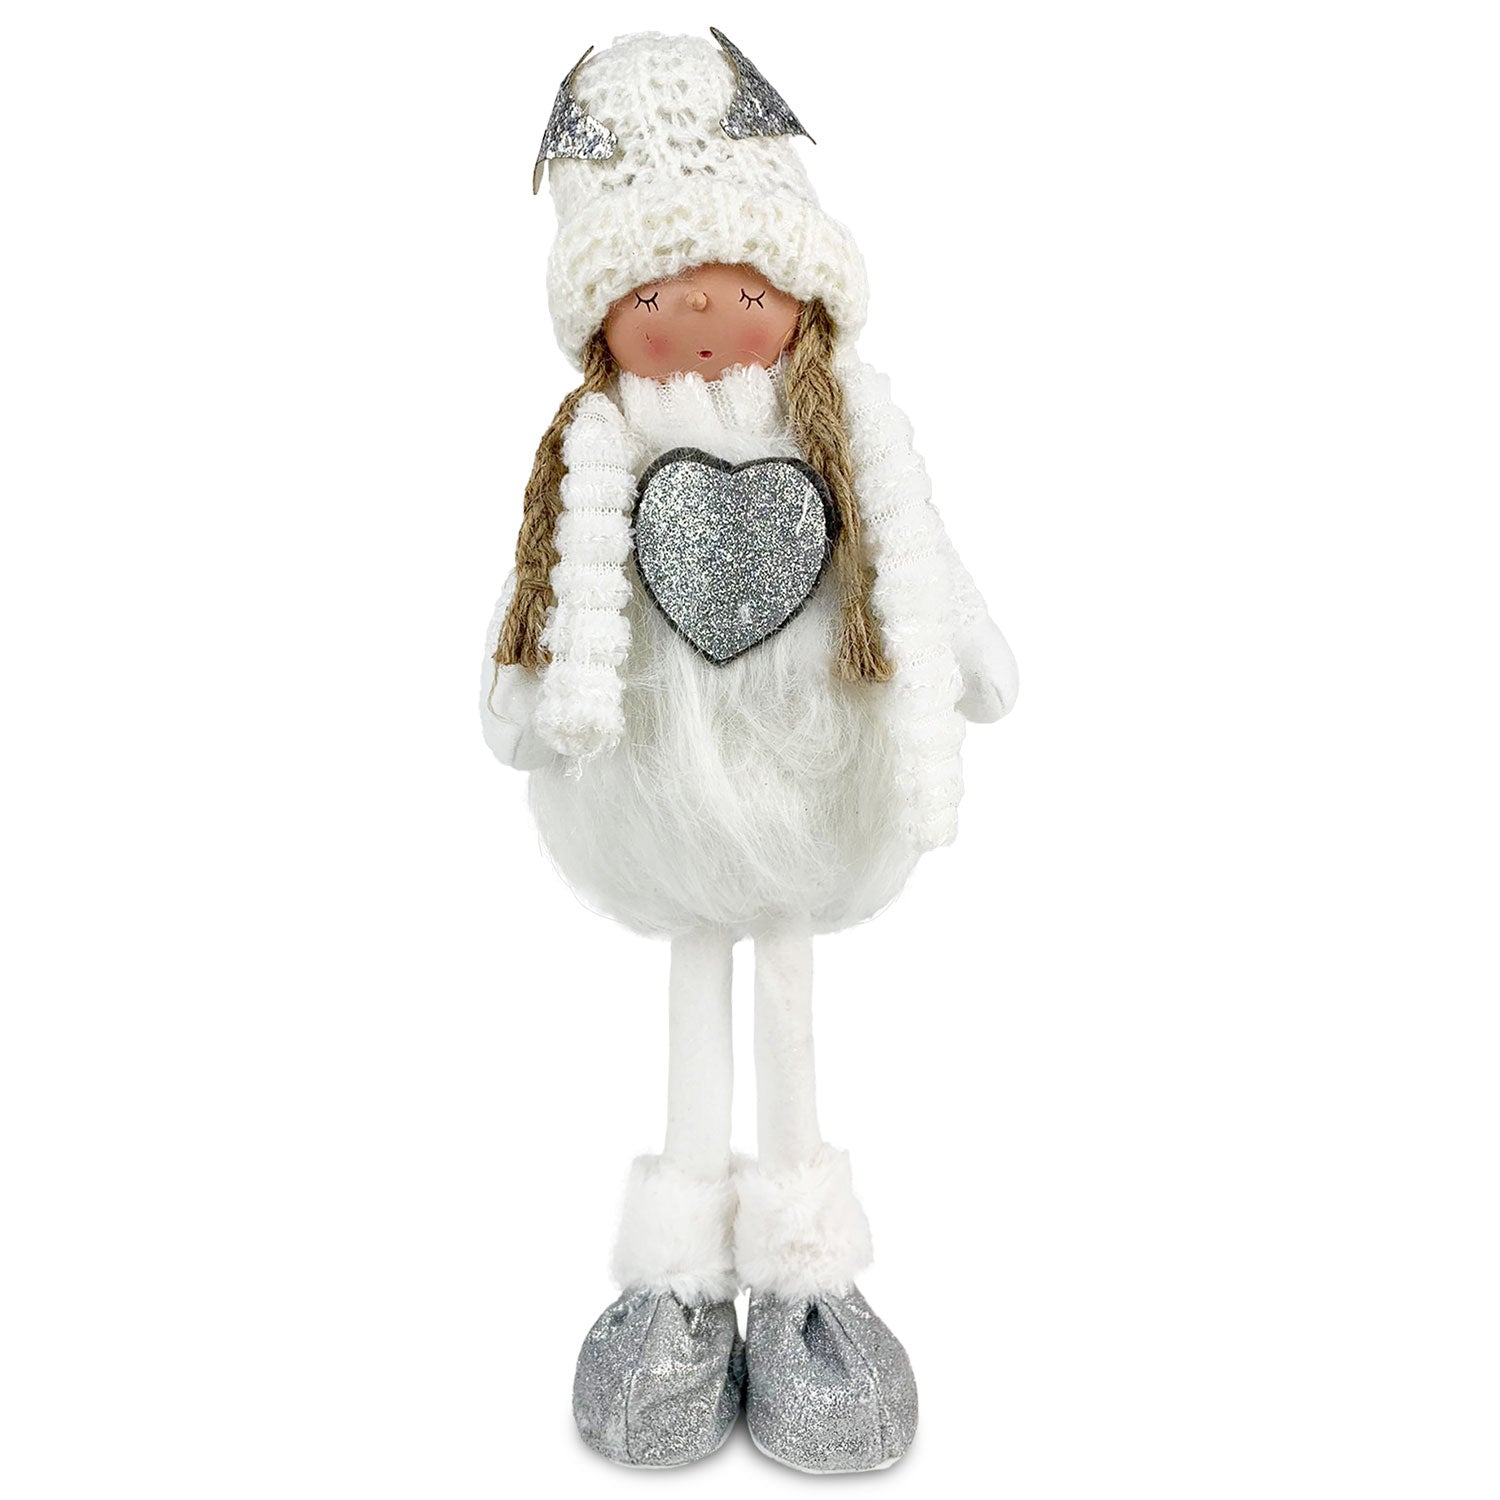 Decorazione natalizia Bambola in piedi bianca peluche Idea Regalo Natale 4749